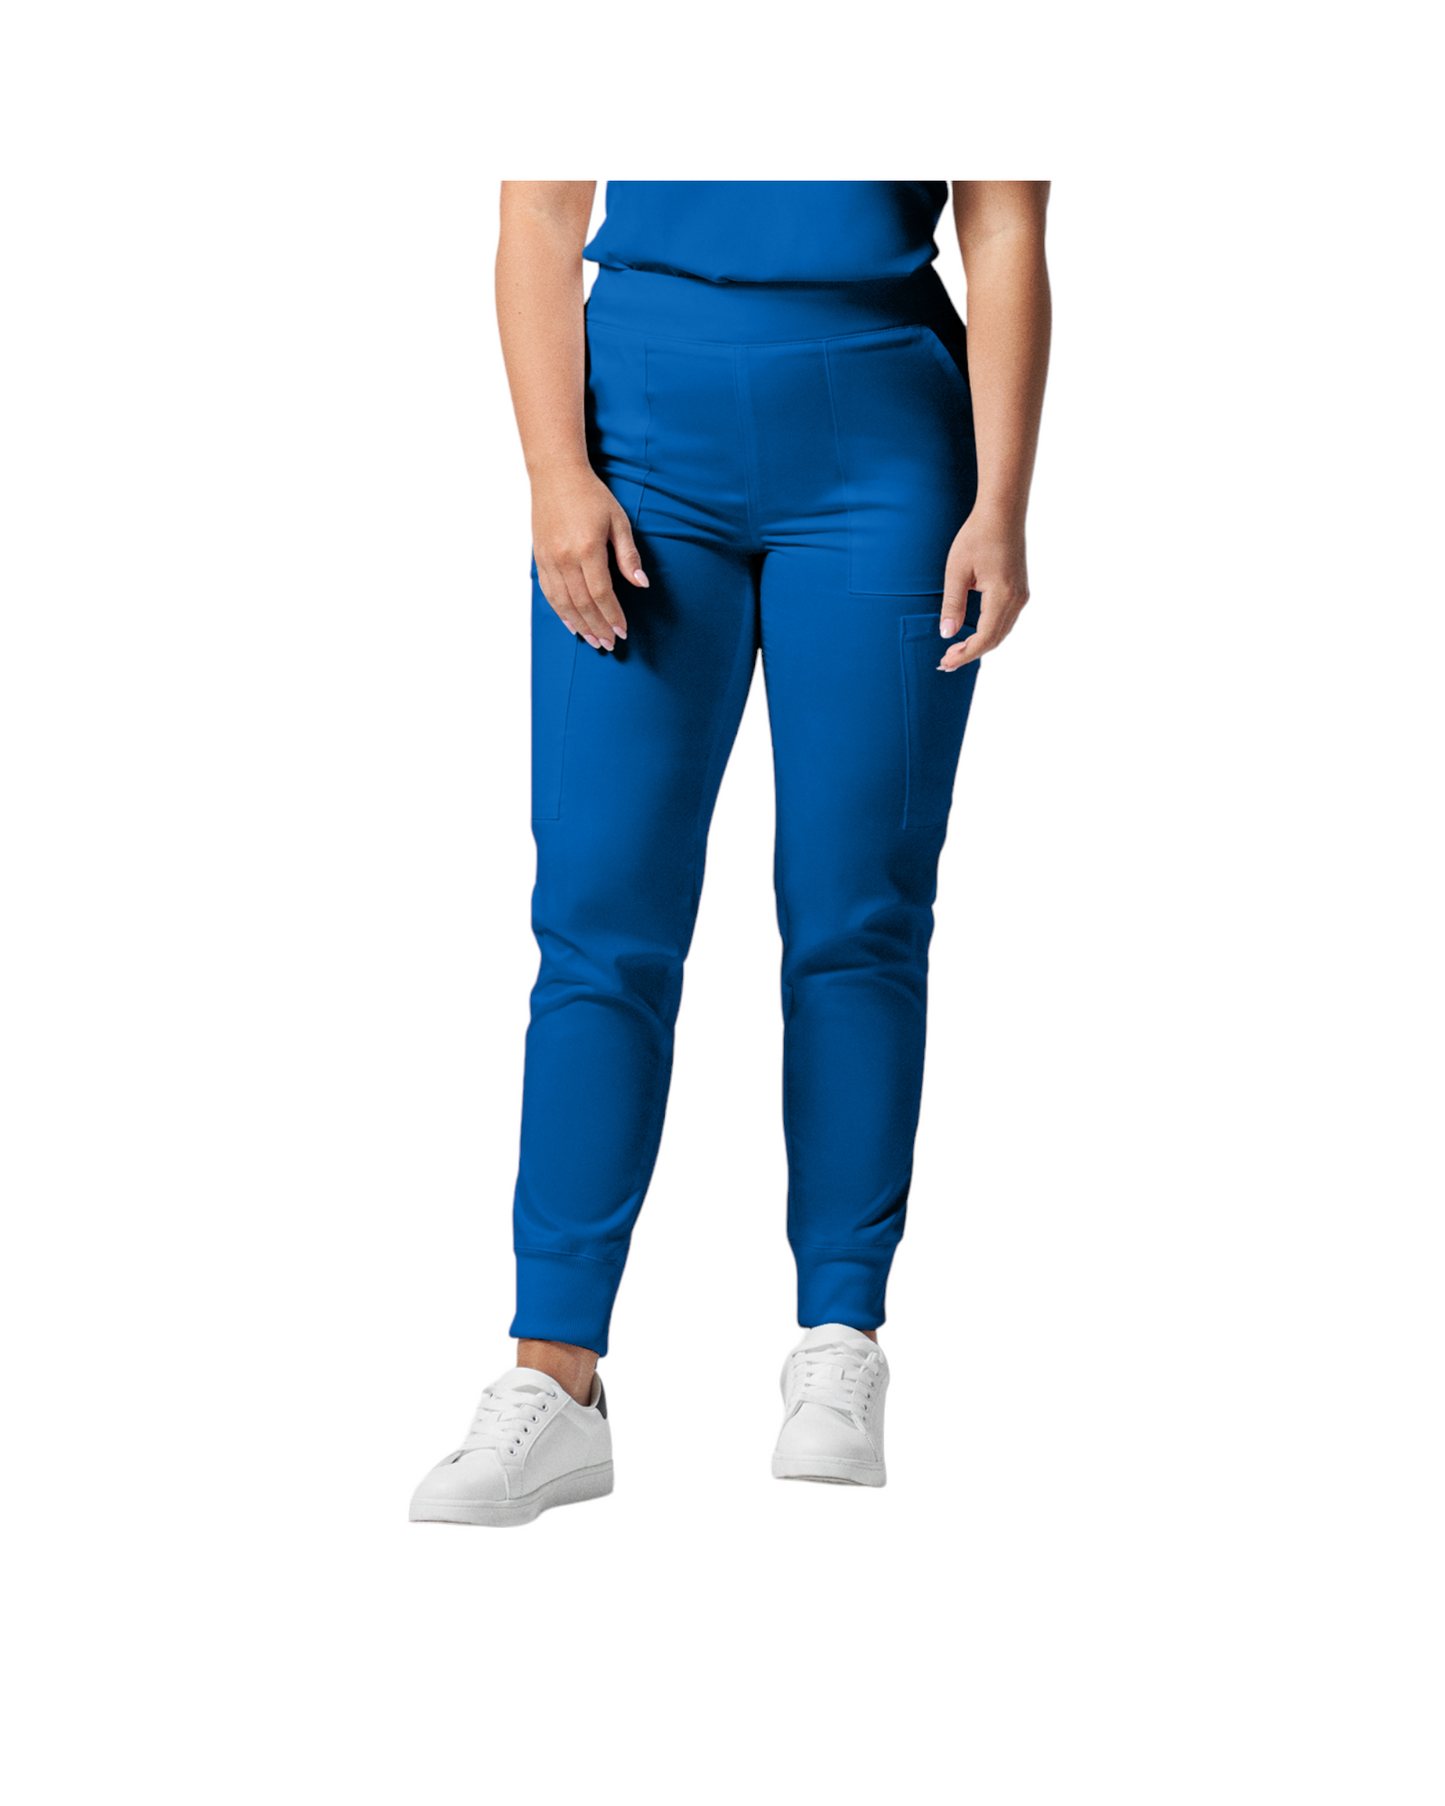 Pantalon de style jogger 6 poches pour femmes Landau Proflex #LB406 couleur Royal